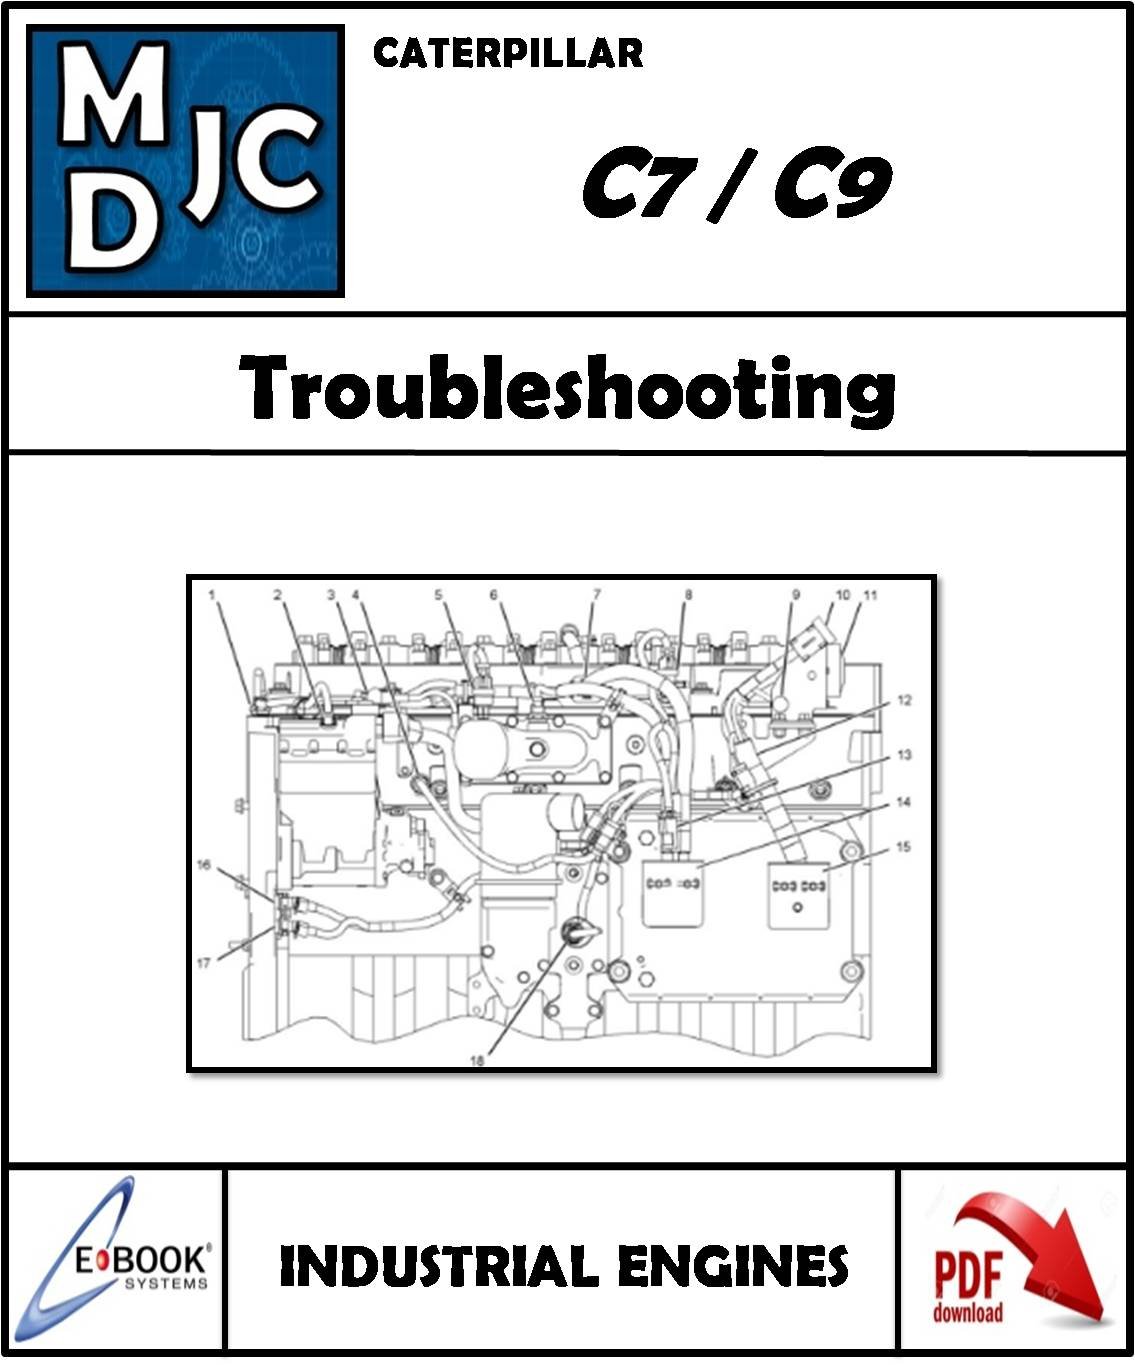 Manual de Fallas y Diagramas Motor Caterpillar C7 / C9